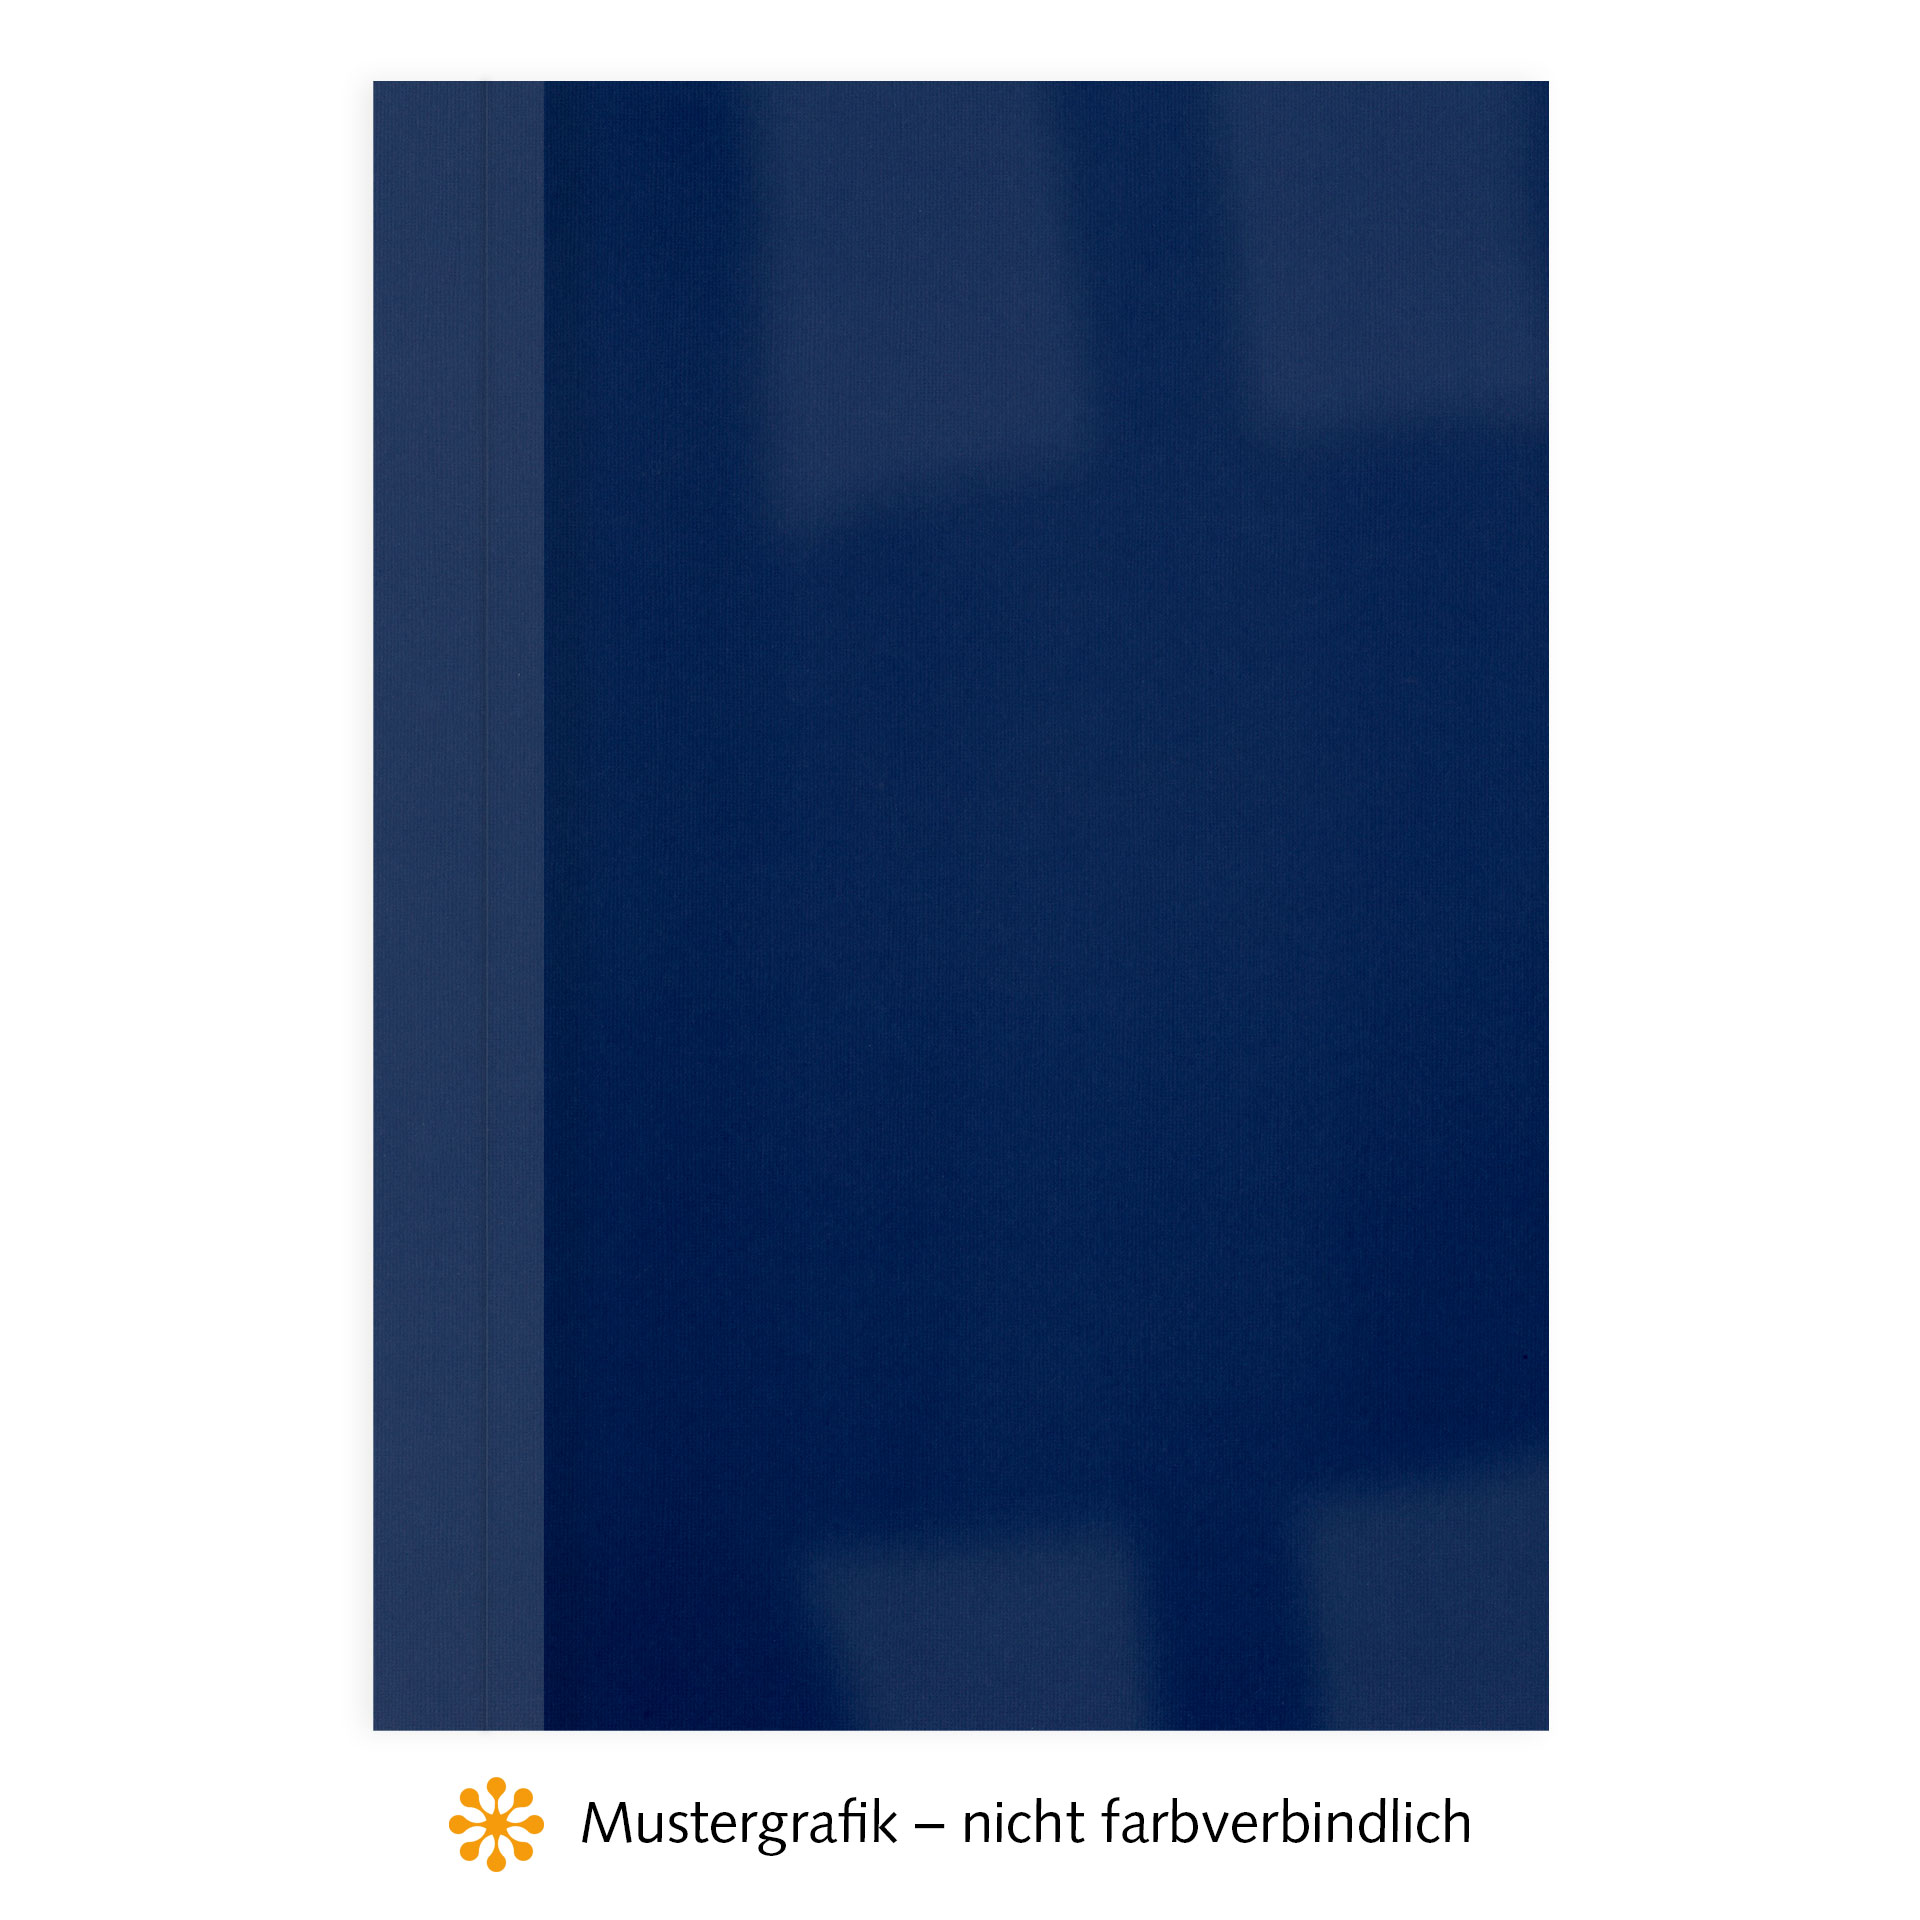 Ösenmappen DUO Cover, Vorderseite Folie KLAR transparent, Rückseite Karton Leinen, Dunkelblau / Royalblau, 6 mm, 51 bis 60 Blatt